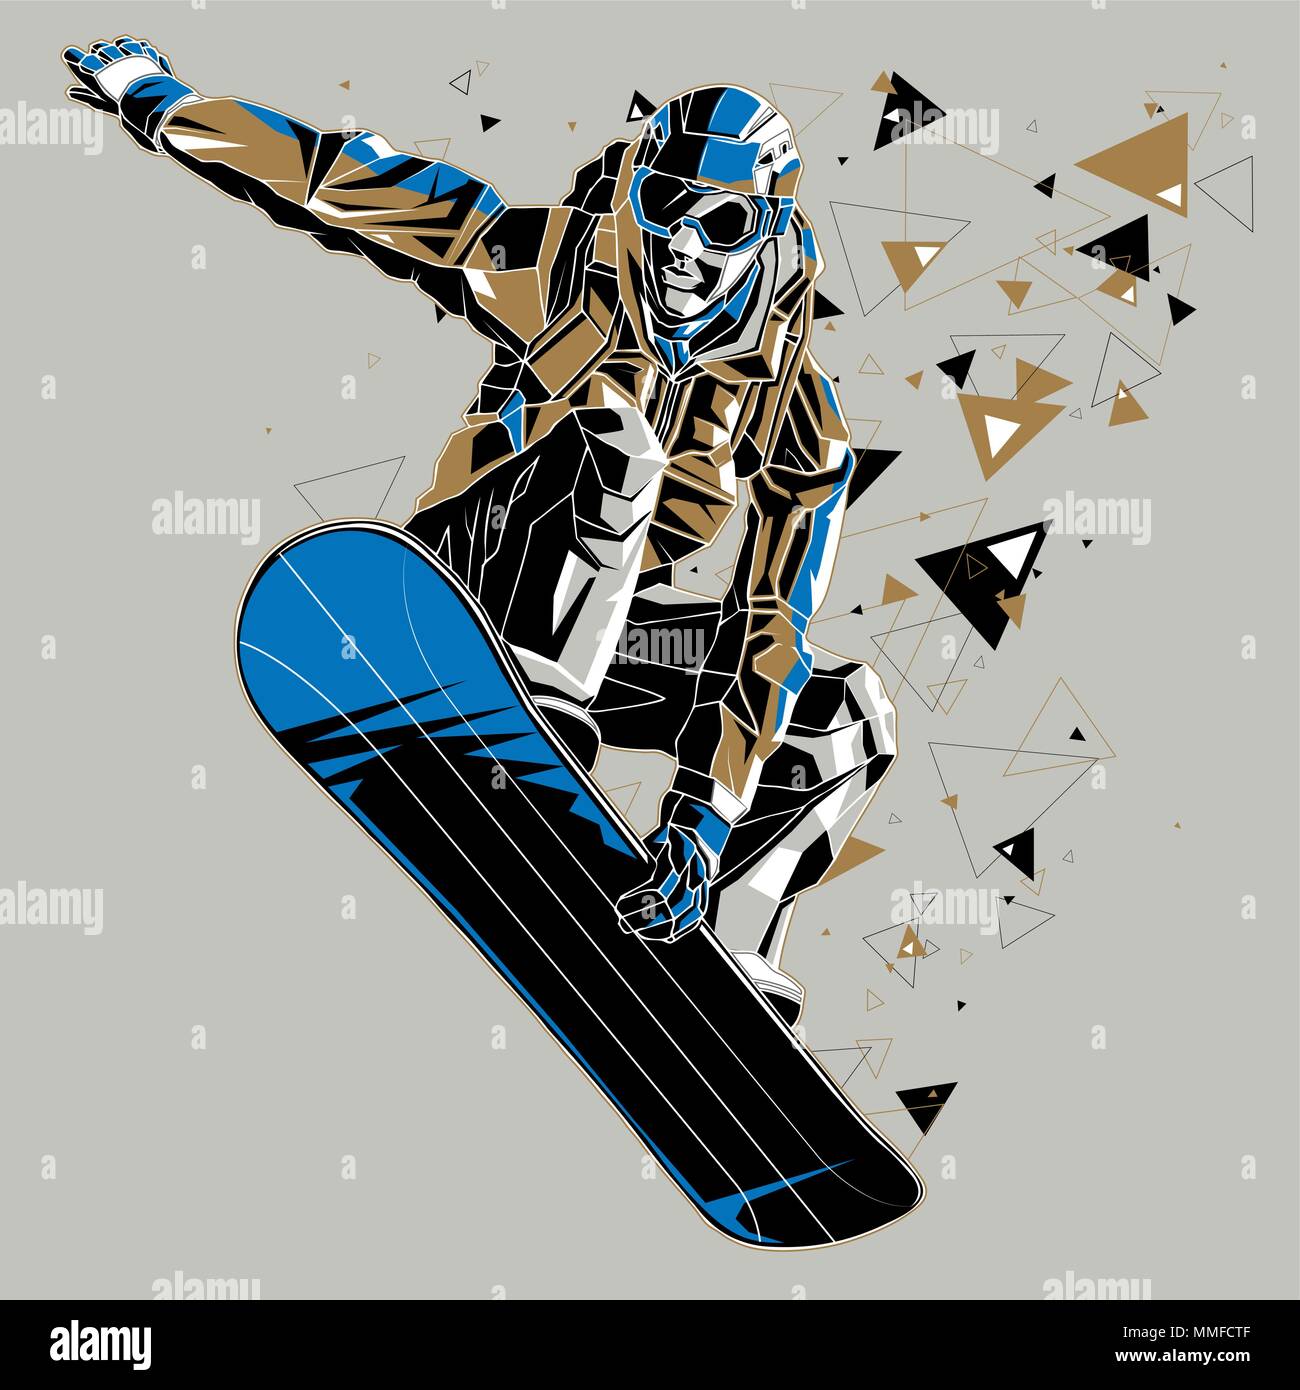 Planche à neige avec une piste graphique. Vector illustration d'un snowboarder jumping, isolé sur fond gris. Illustration de Vecteur